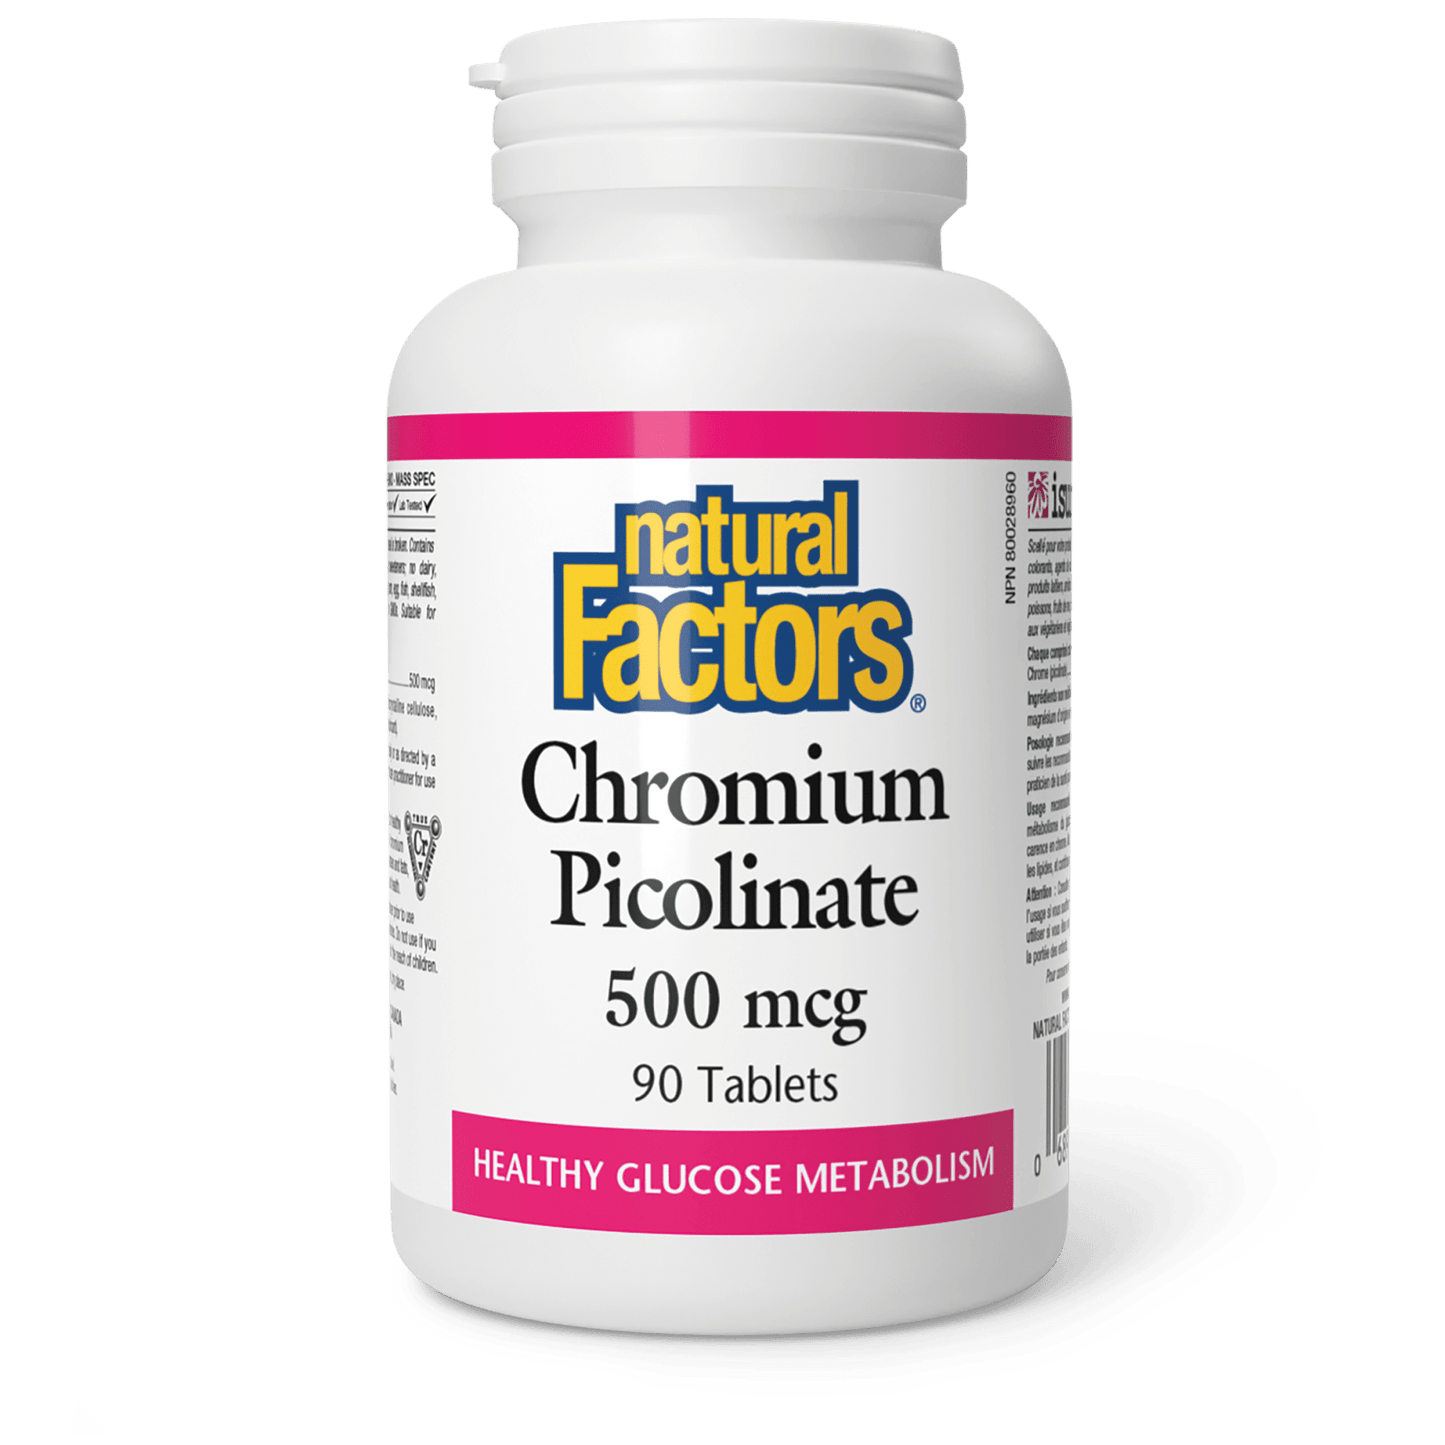 Chromium Picolinate 500 mcg, Natural Factors|v|image|1637